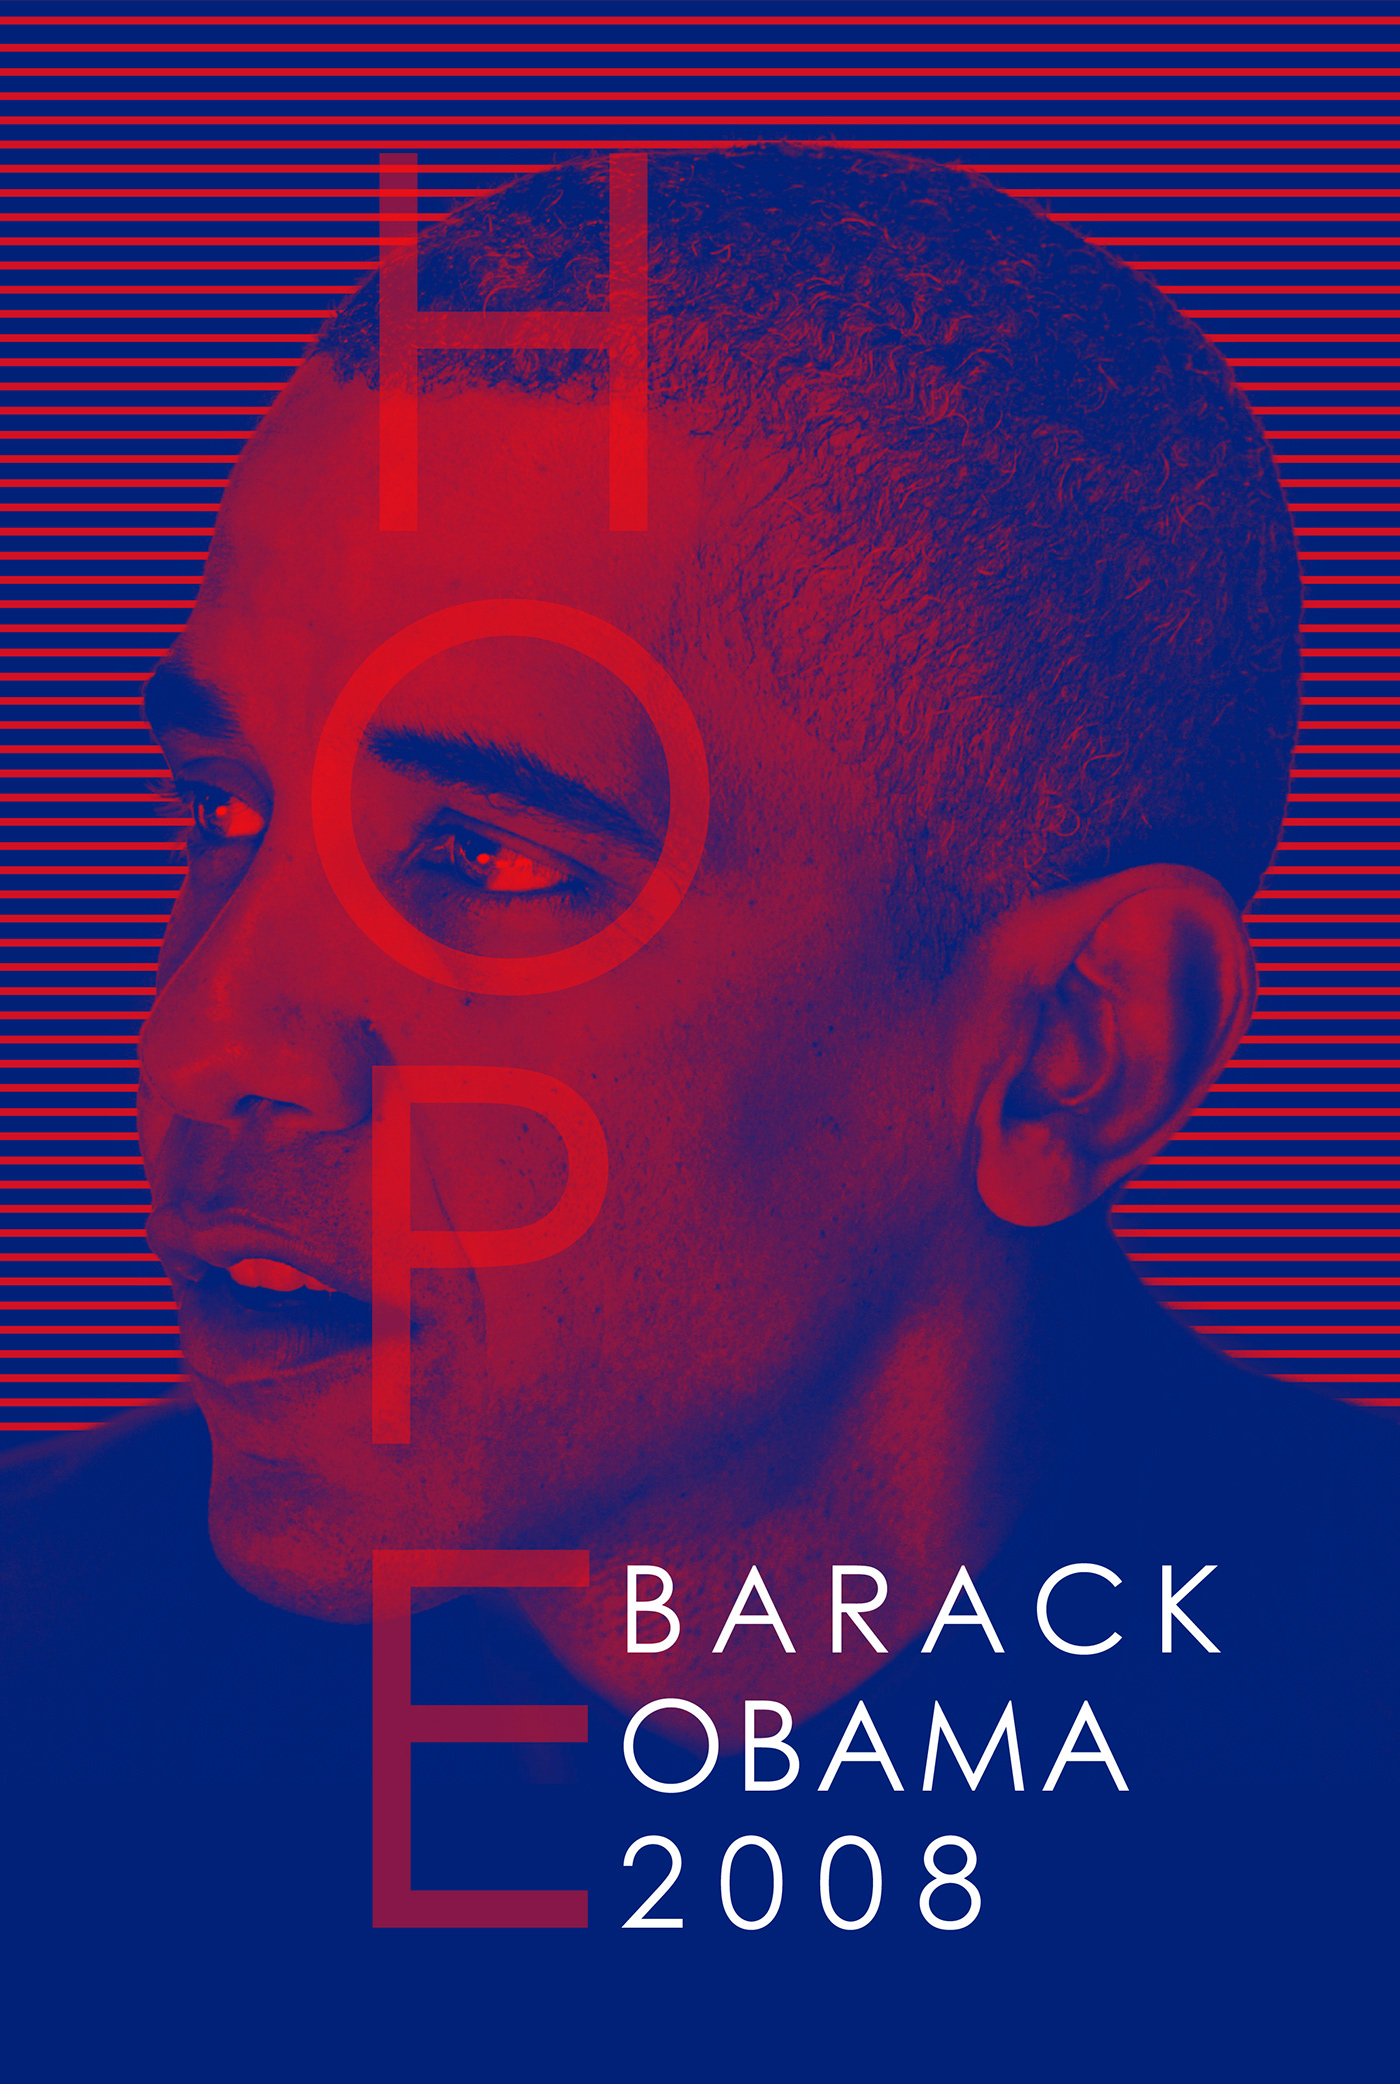 cartel diseño gráfico duotono obama